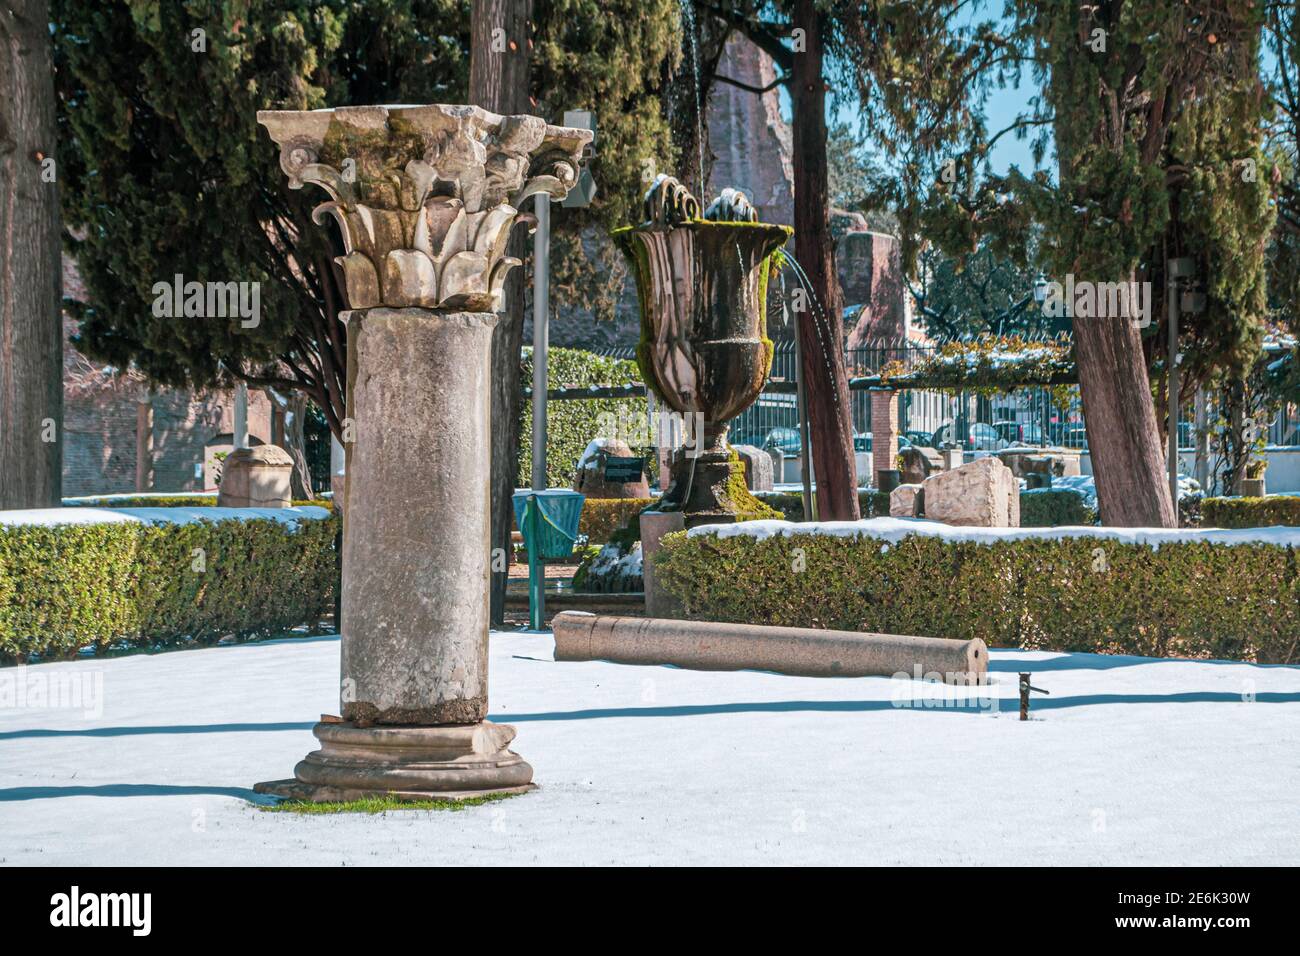 Rome, Italie - 26 février 2018 : Musée national de Rome, bains de Dioclétien sous la neige. Des chutes de neige anormales à Rome. Neige sur Rome pour la première fois Banque D'Images